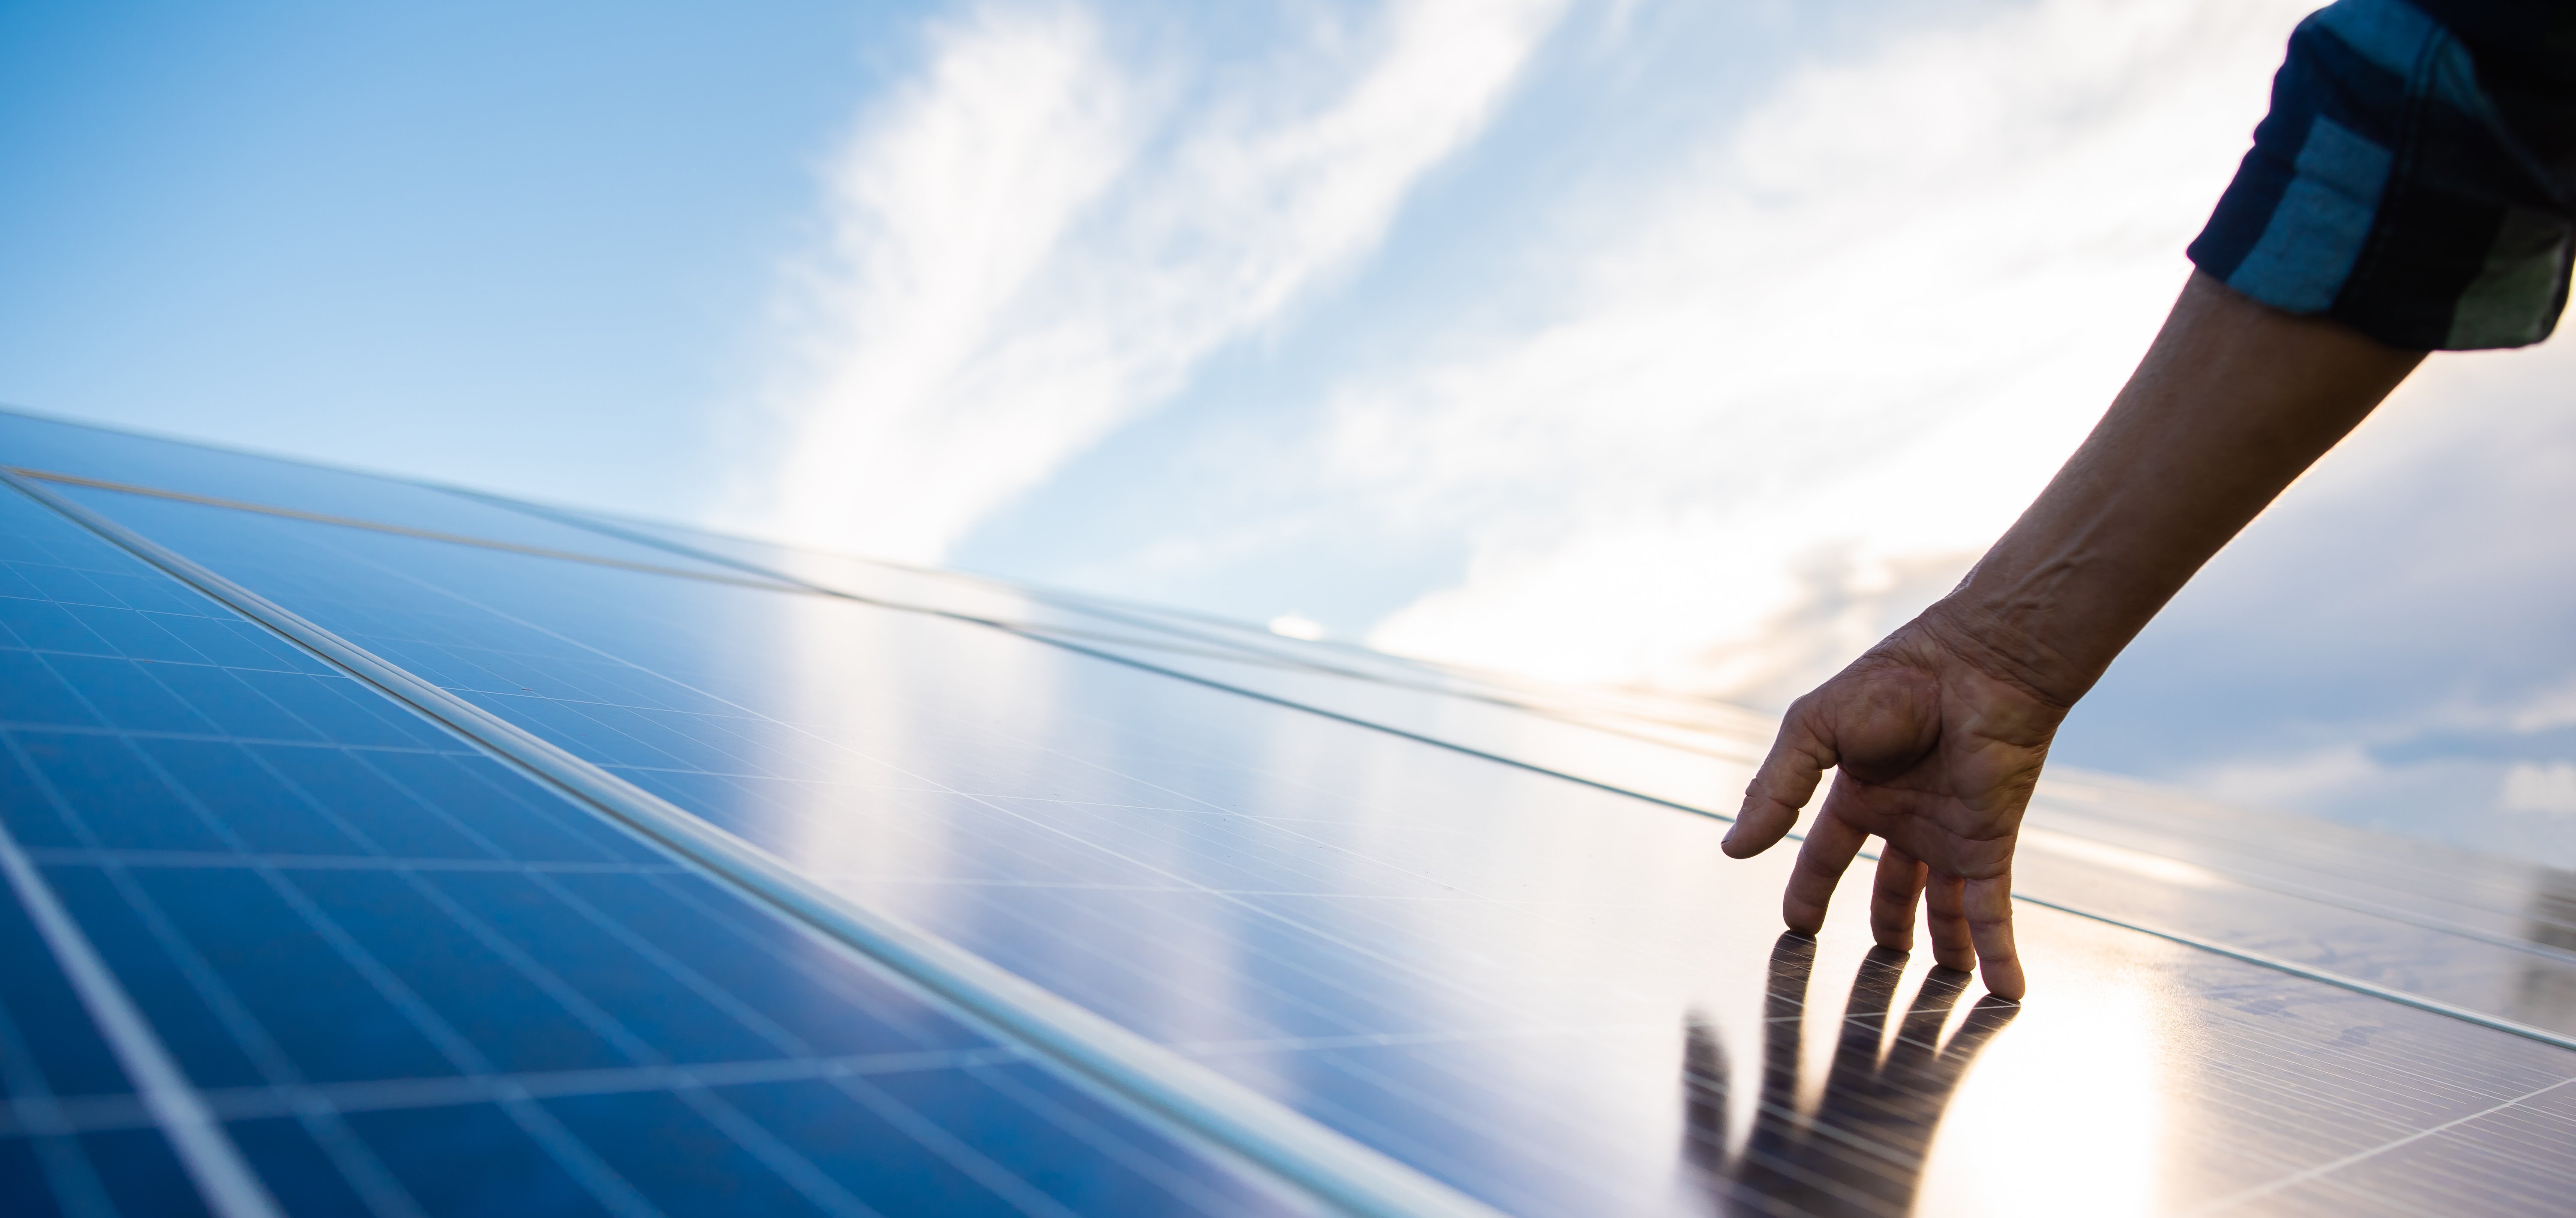 Photovoltaik – sauberer Solarstrom